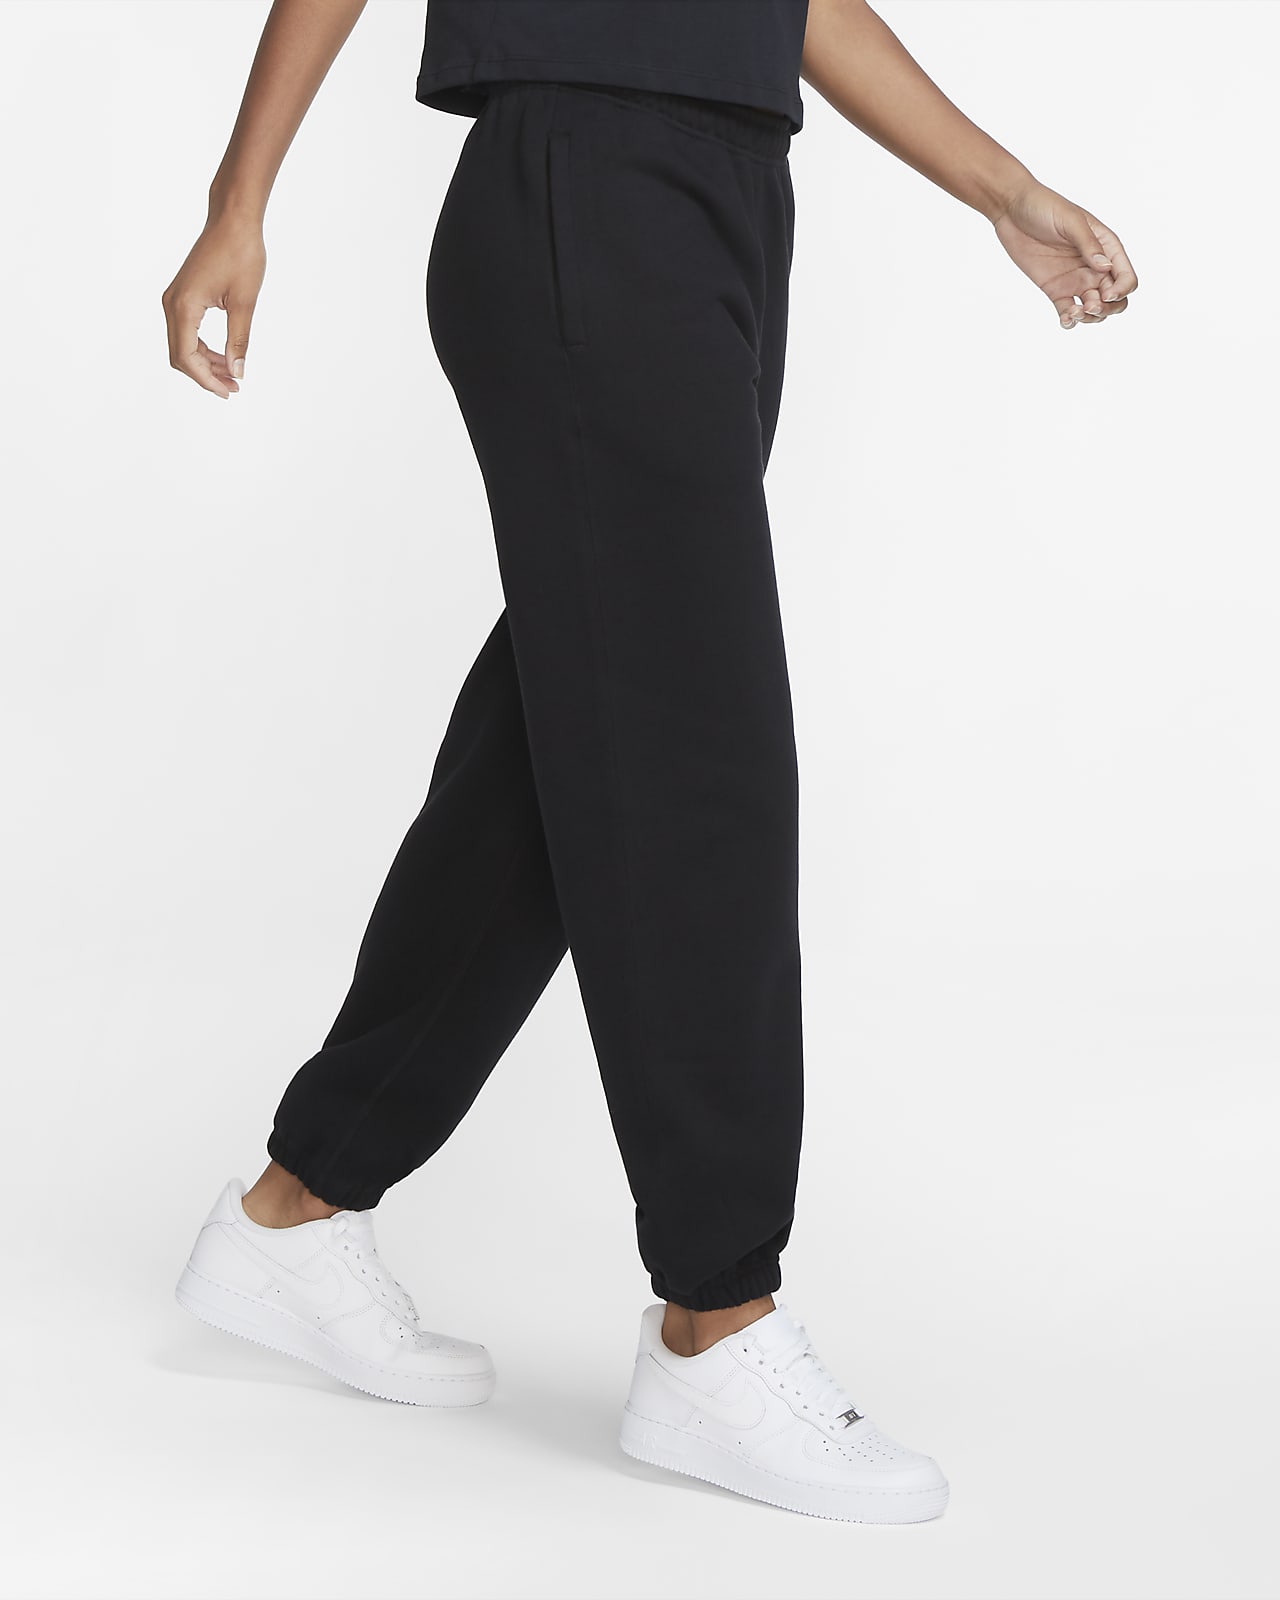 NikeLab Women's Fleece Pants